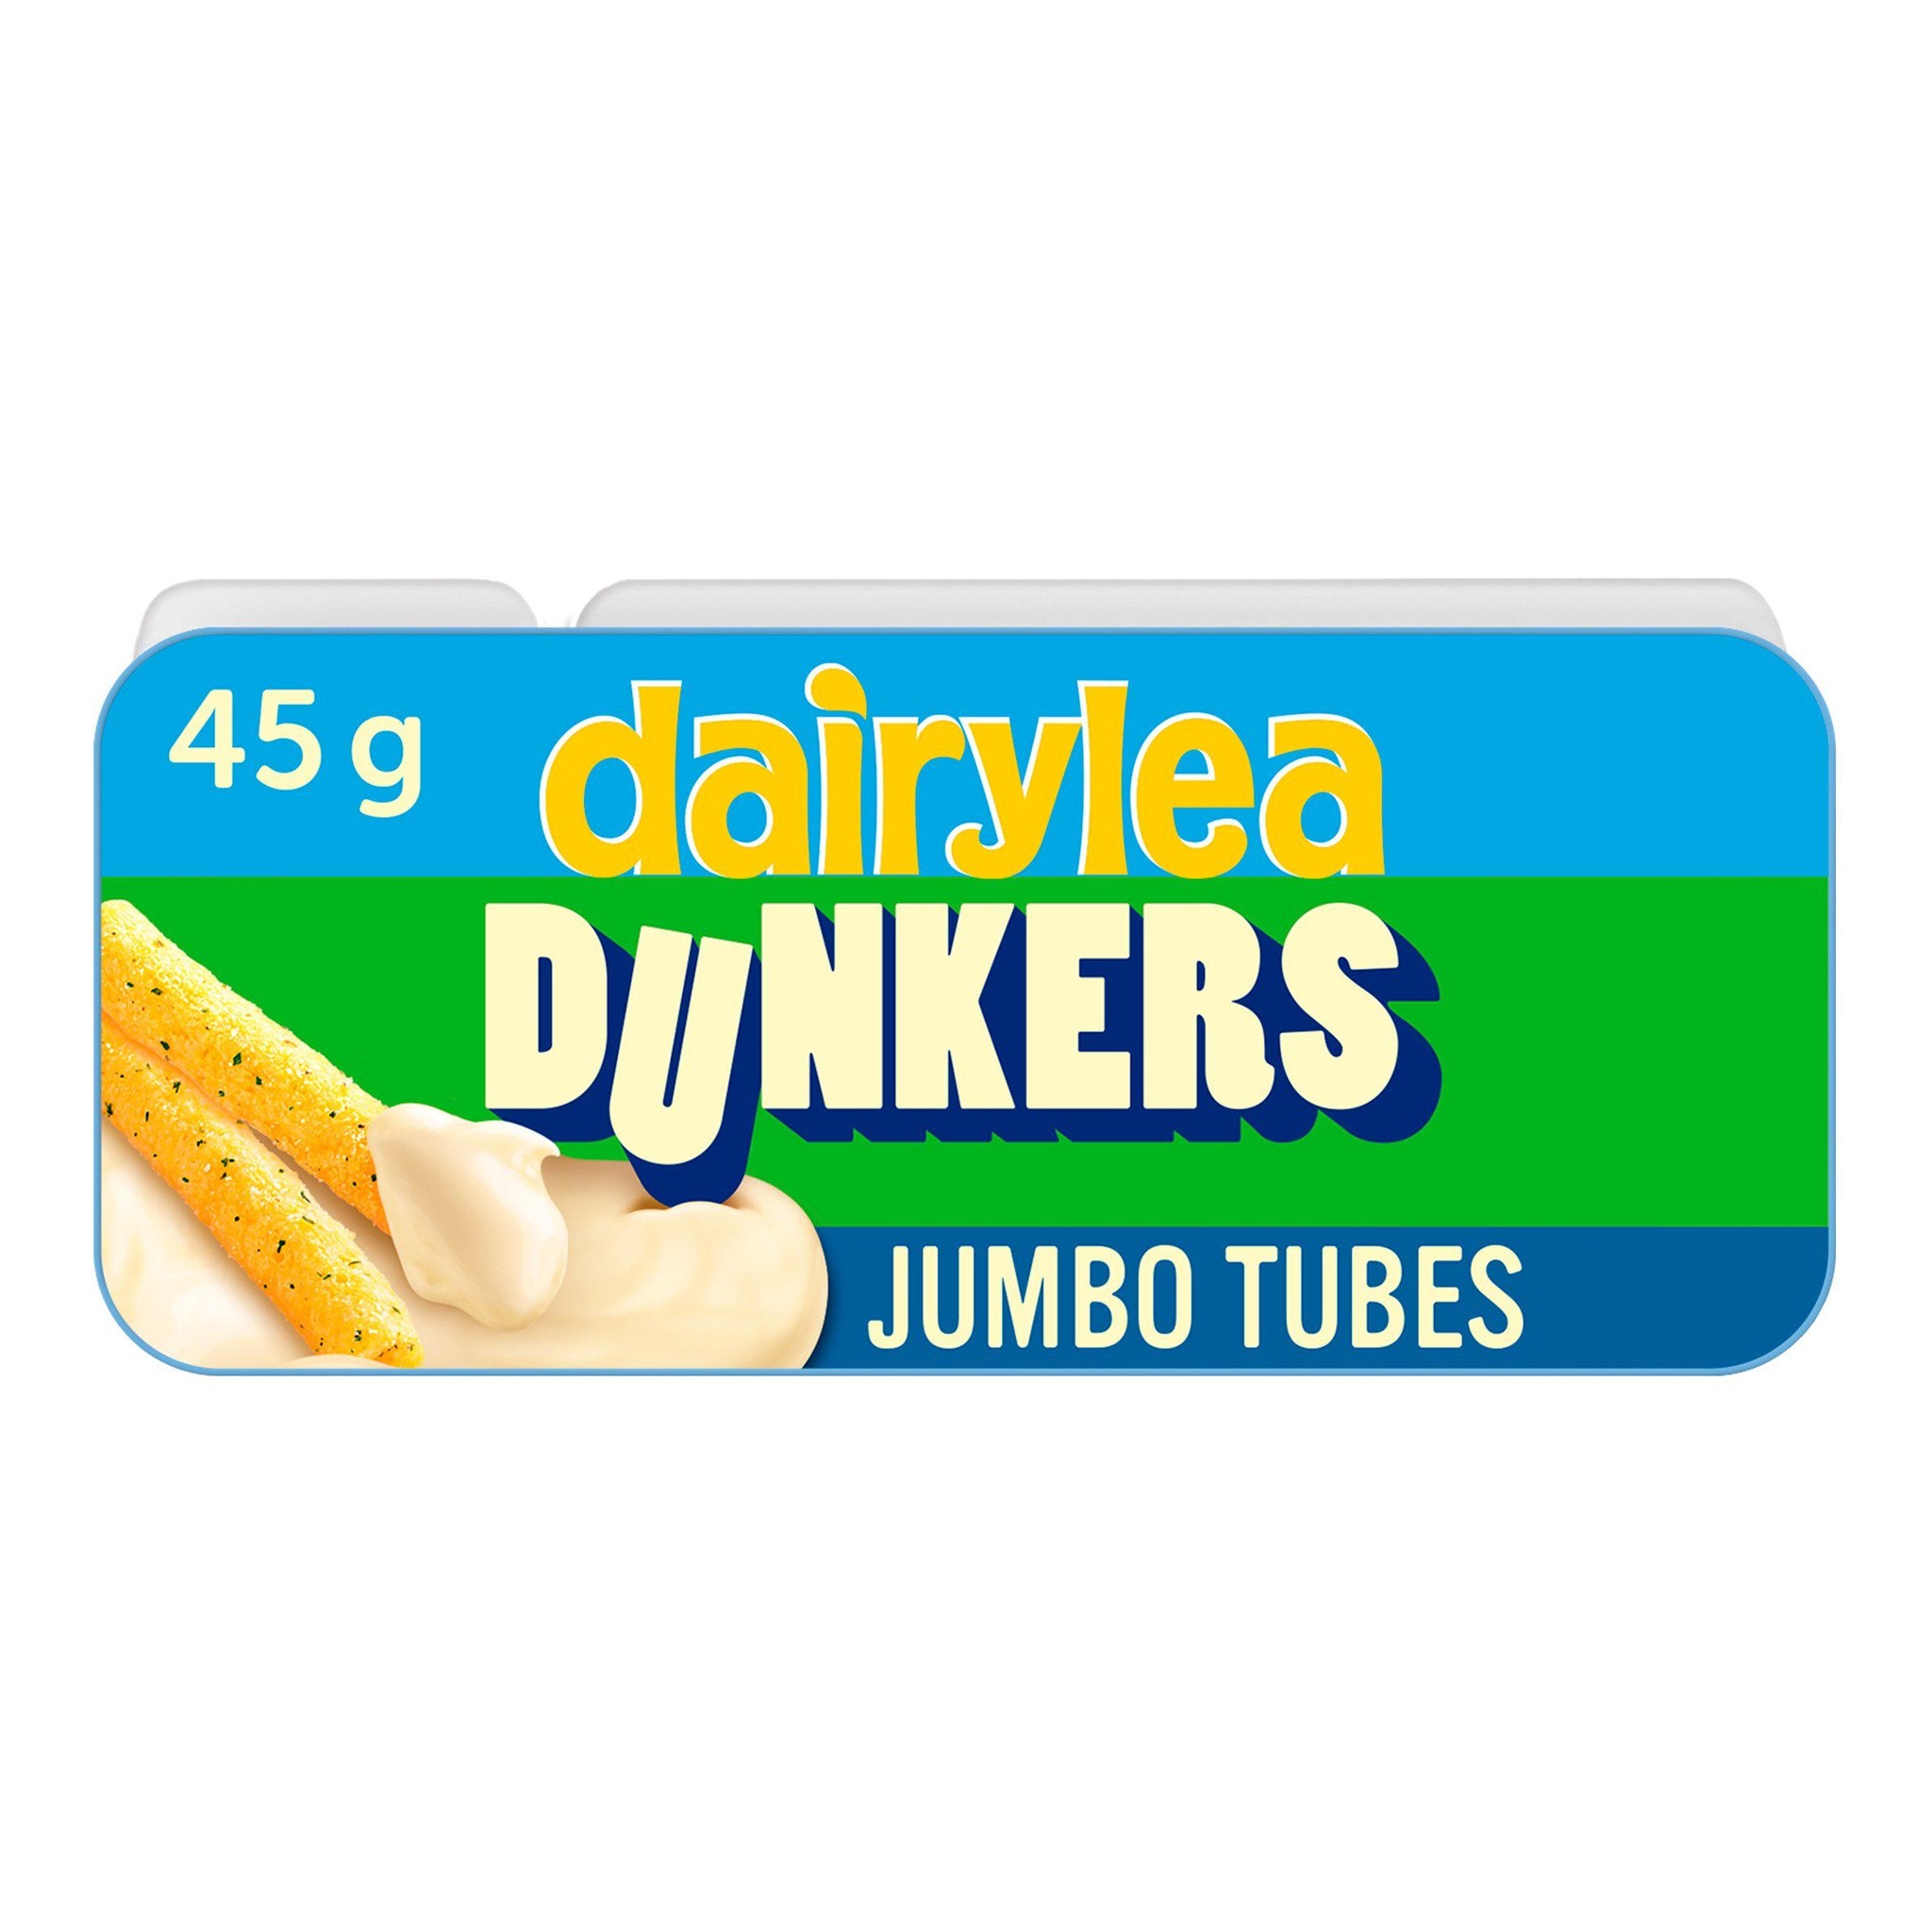 Dairylea Dunkers Jumbo 45g - Russells British Store